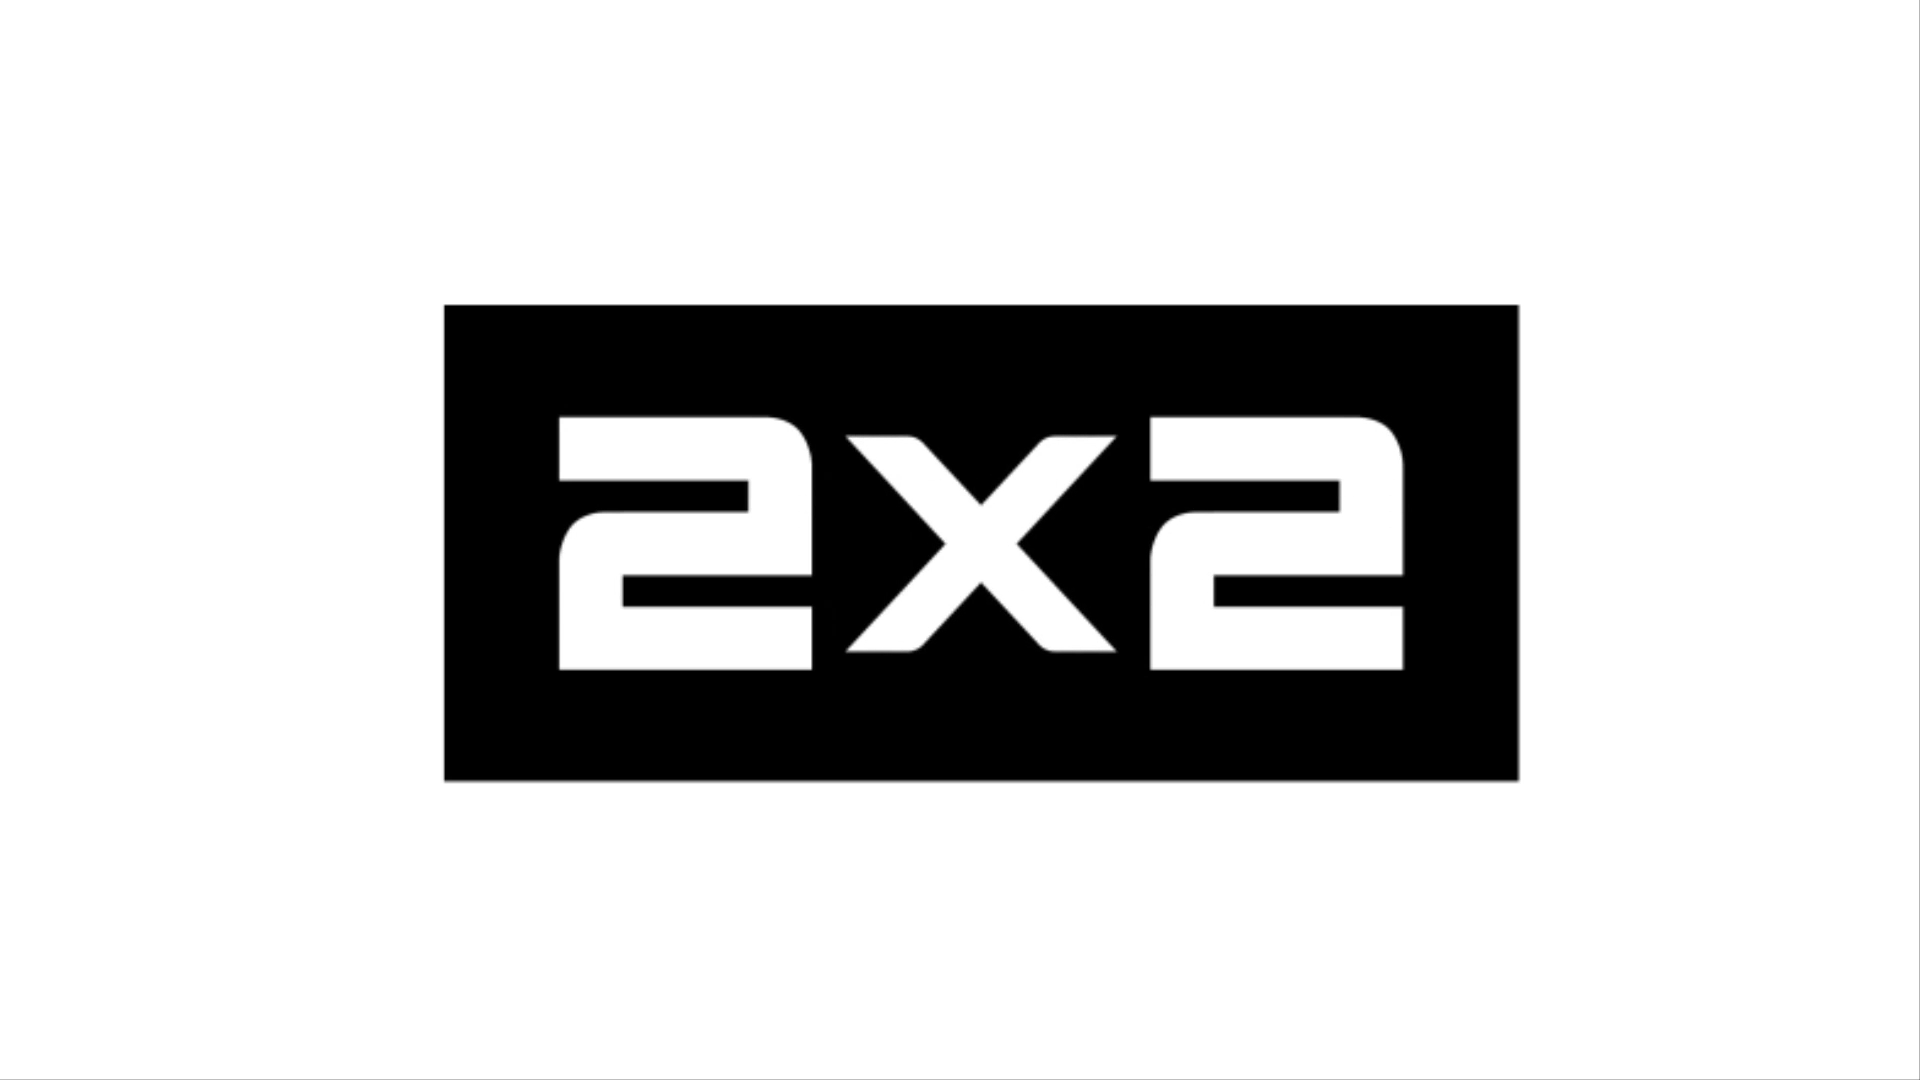 Телекомпания 2. Телеканал 2х2 логотип. Телеканал 2х2 (the 2x2 channel). Эмблема канала 2х2. Дважды два логотип.